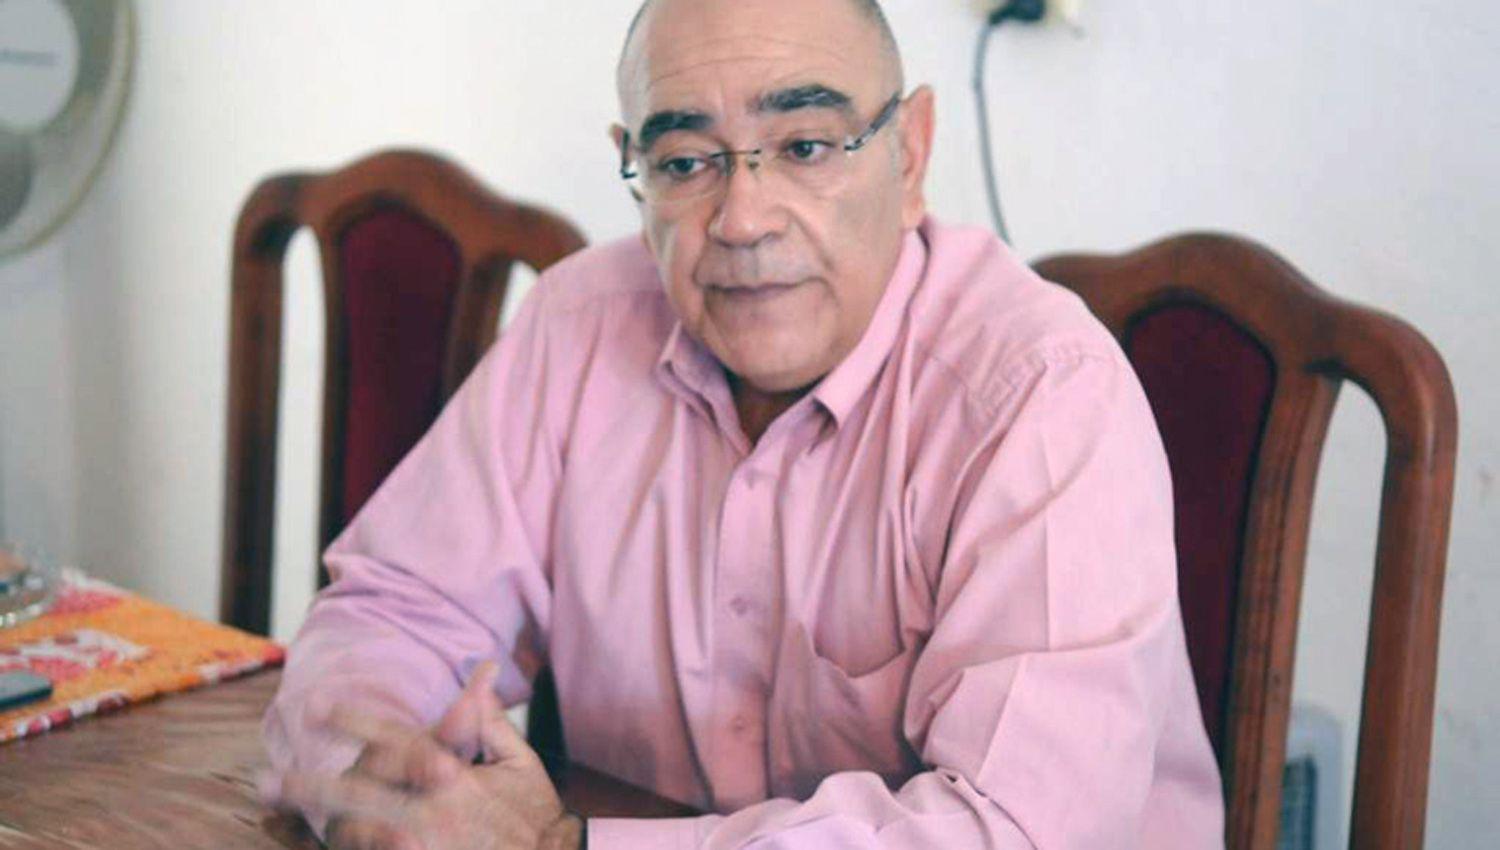 El Dr José
Luis Torrelio juez de Control y
Garantías ordenó que siguiera tras
las rejas